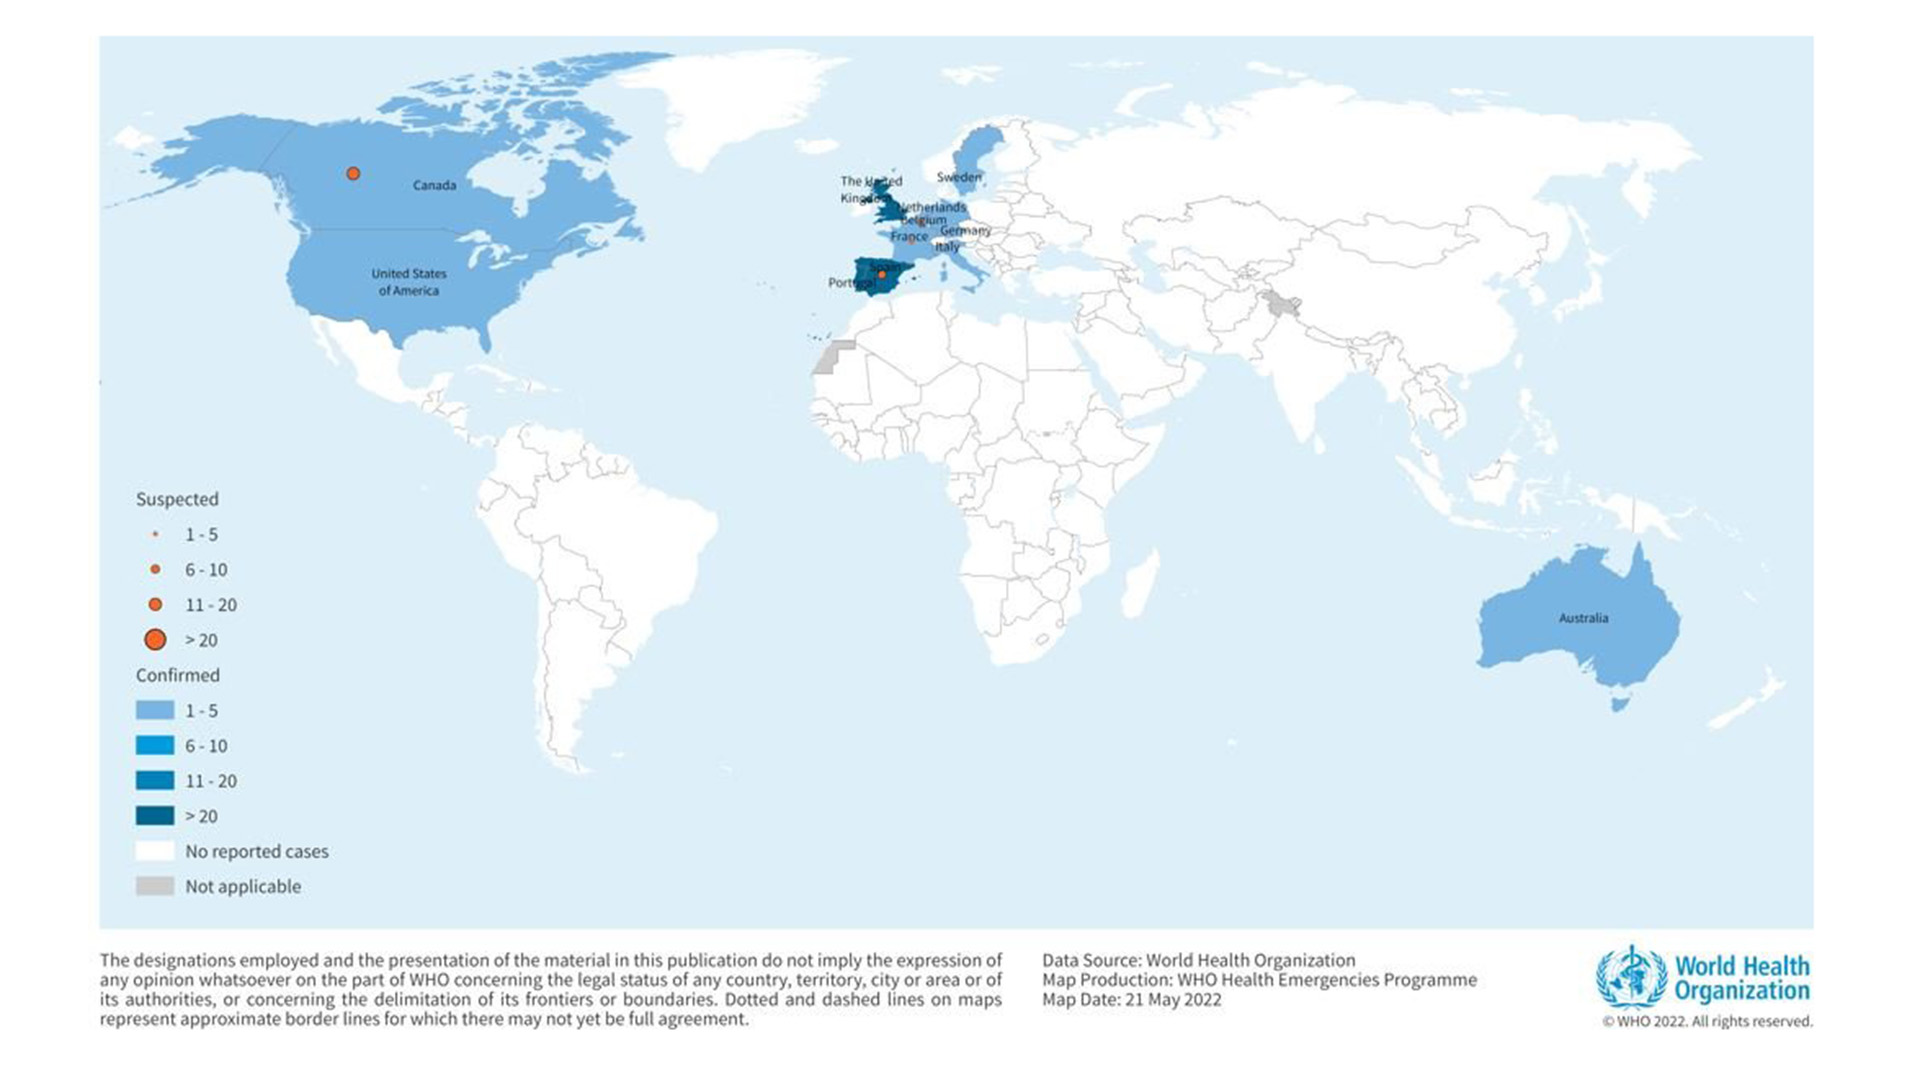 Programa de Emergencias Sanitarias de la OMS con países con viruela del mono / Fecha del mapa: 21 de mayo de 2022
Crédito: OMS